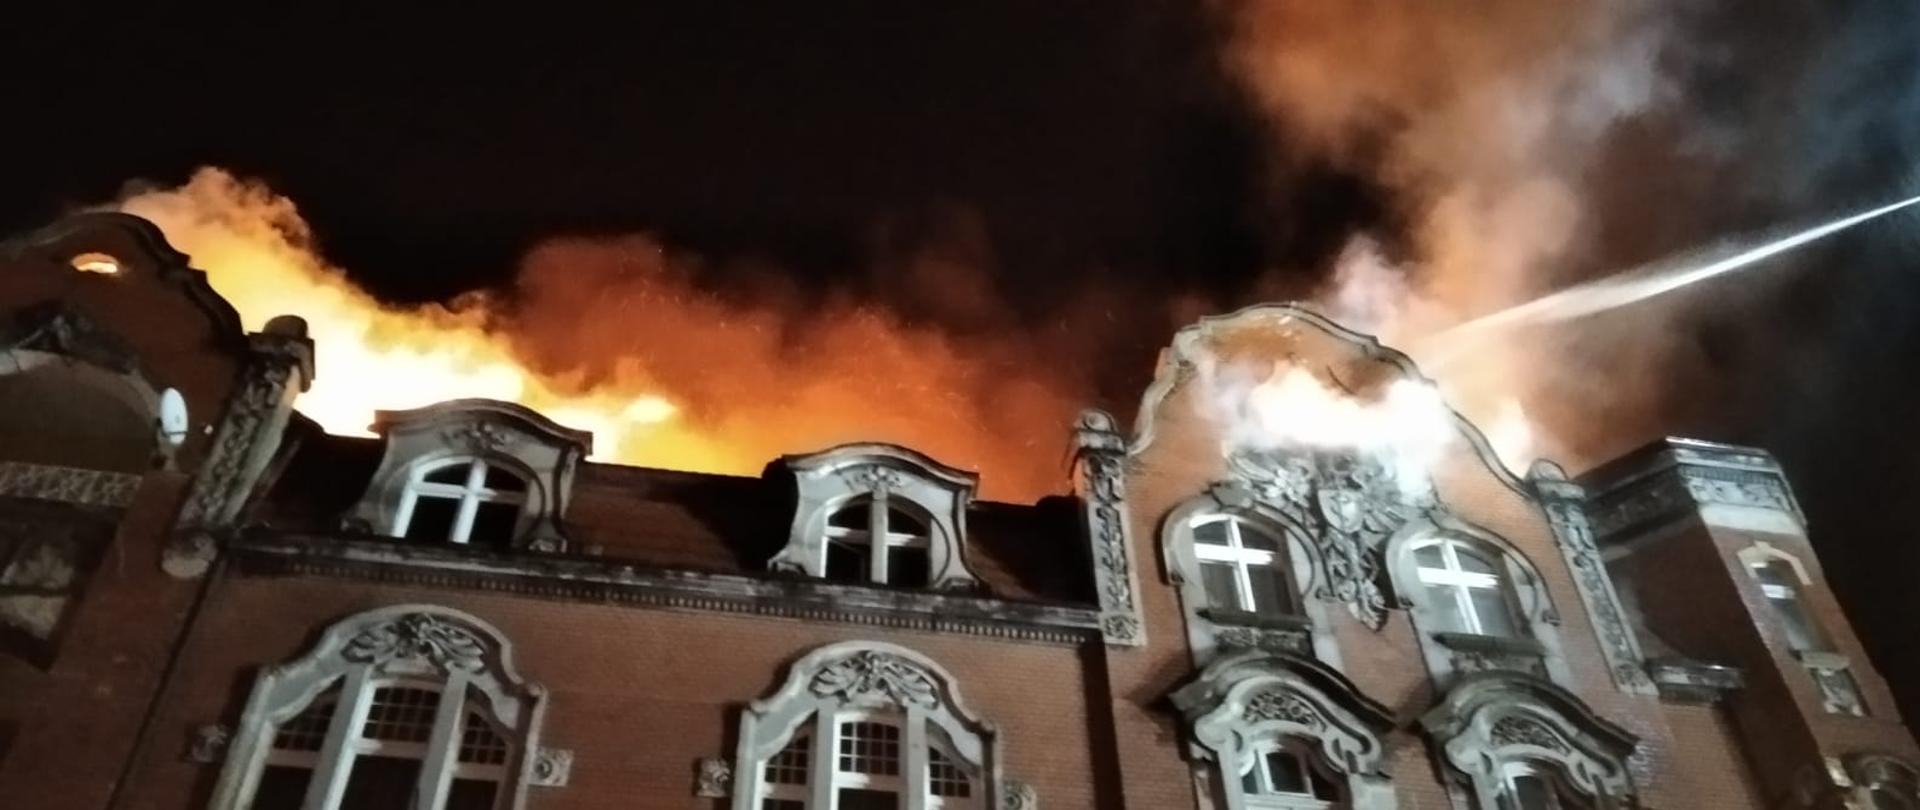 Pożar dachu w budynku mieszkalnym wielorodzinnym przy ul. Dworcowej w Zabrzu.